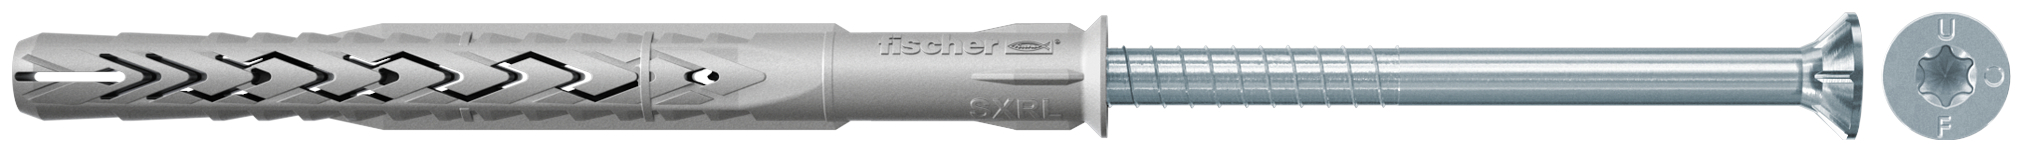 fischer Tasselli prolungati SXRL 14X80 T (1 Pz.) Tassello prolungato in nylon con marcatura CE con vite premontata T.S.P. impronta torx fie2558